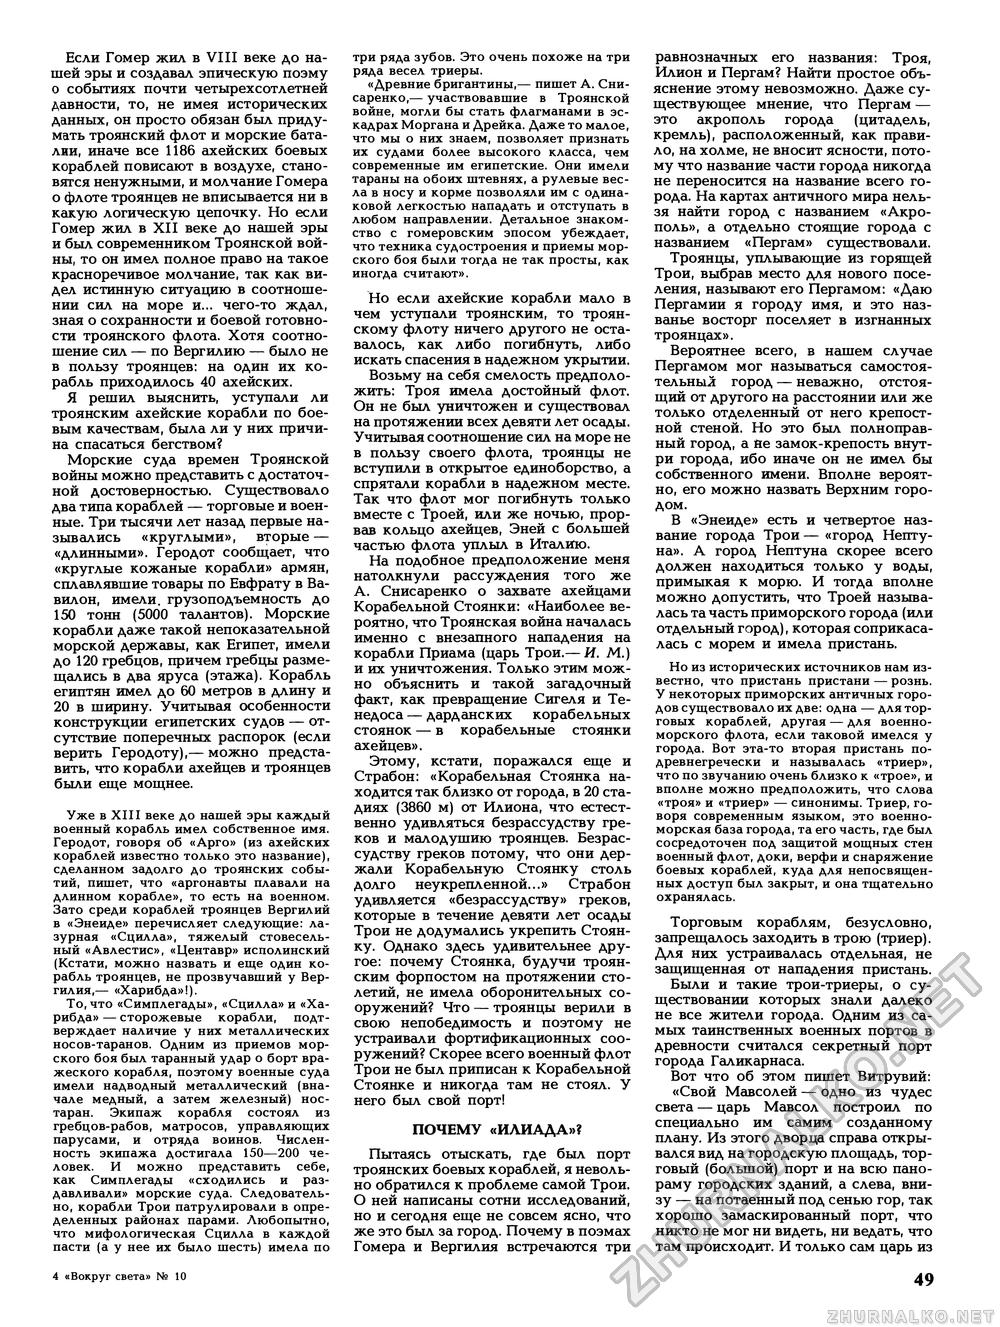 Вокруг света 1988-10, страница 51